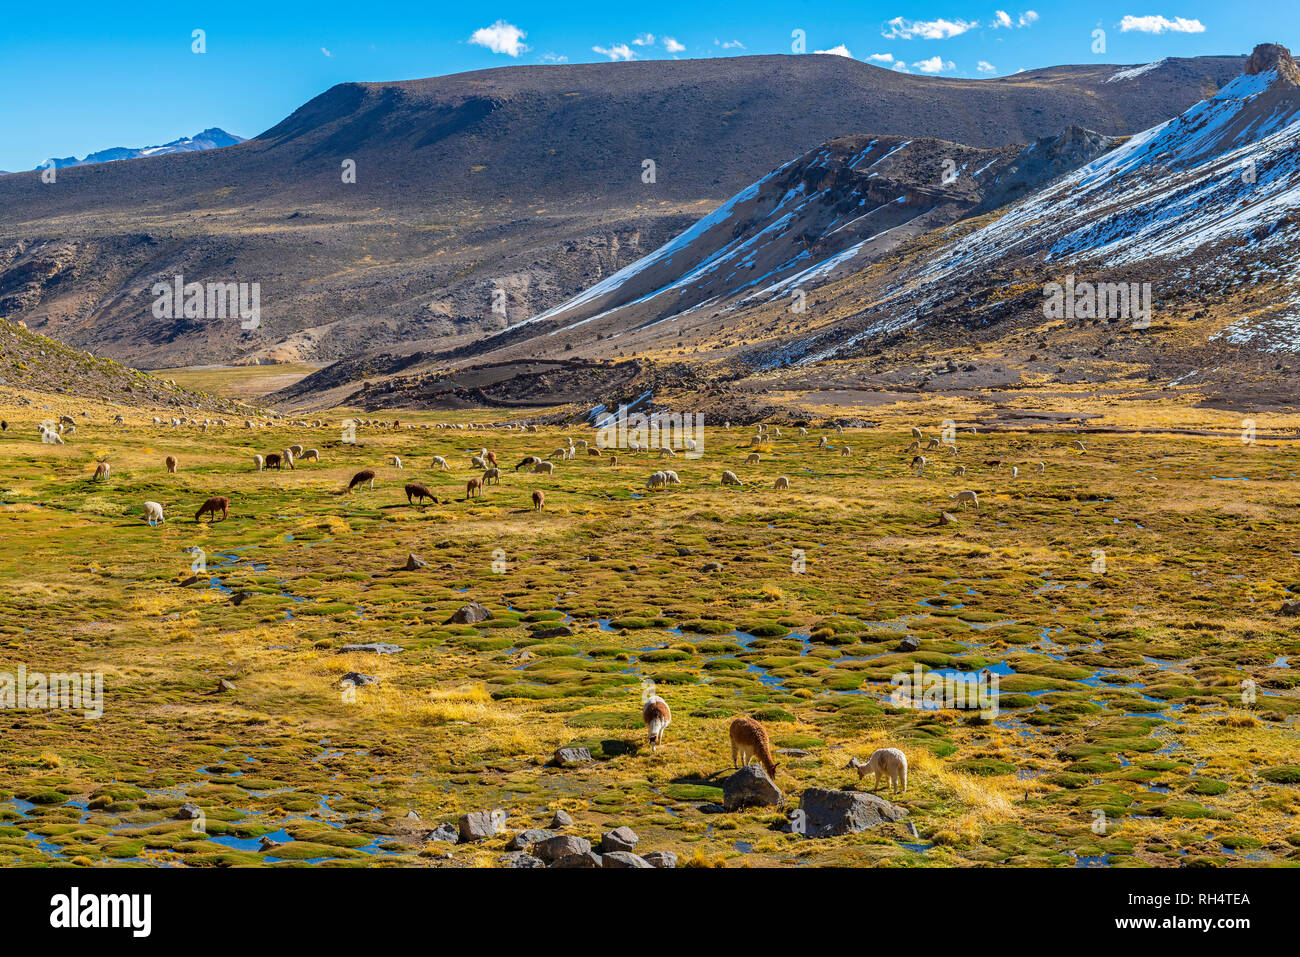 Des centaines d'alpagas et de lamas paissant dans une vallée fertile dans la réserve nationale de Salinas y Aguada Blanca par le Canyon de Colca, Arequipa, Pérou. Banque D'Images